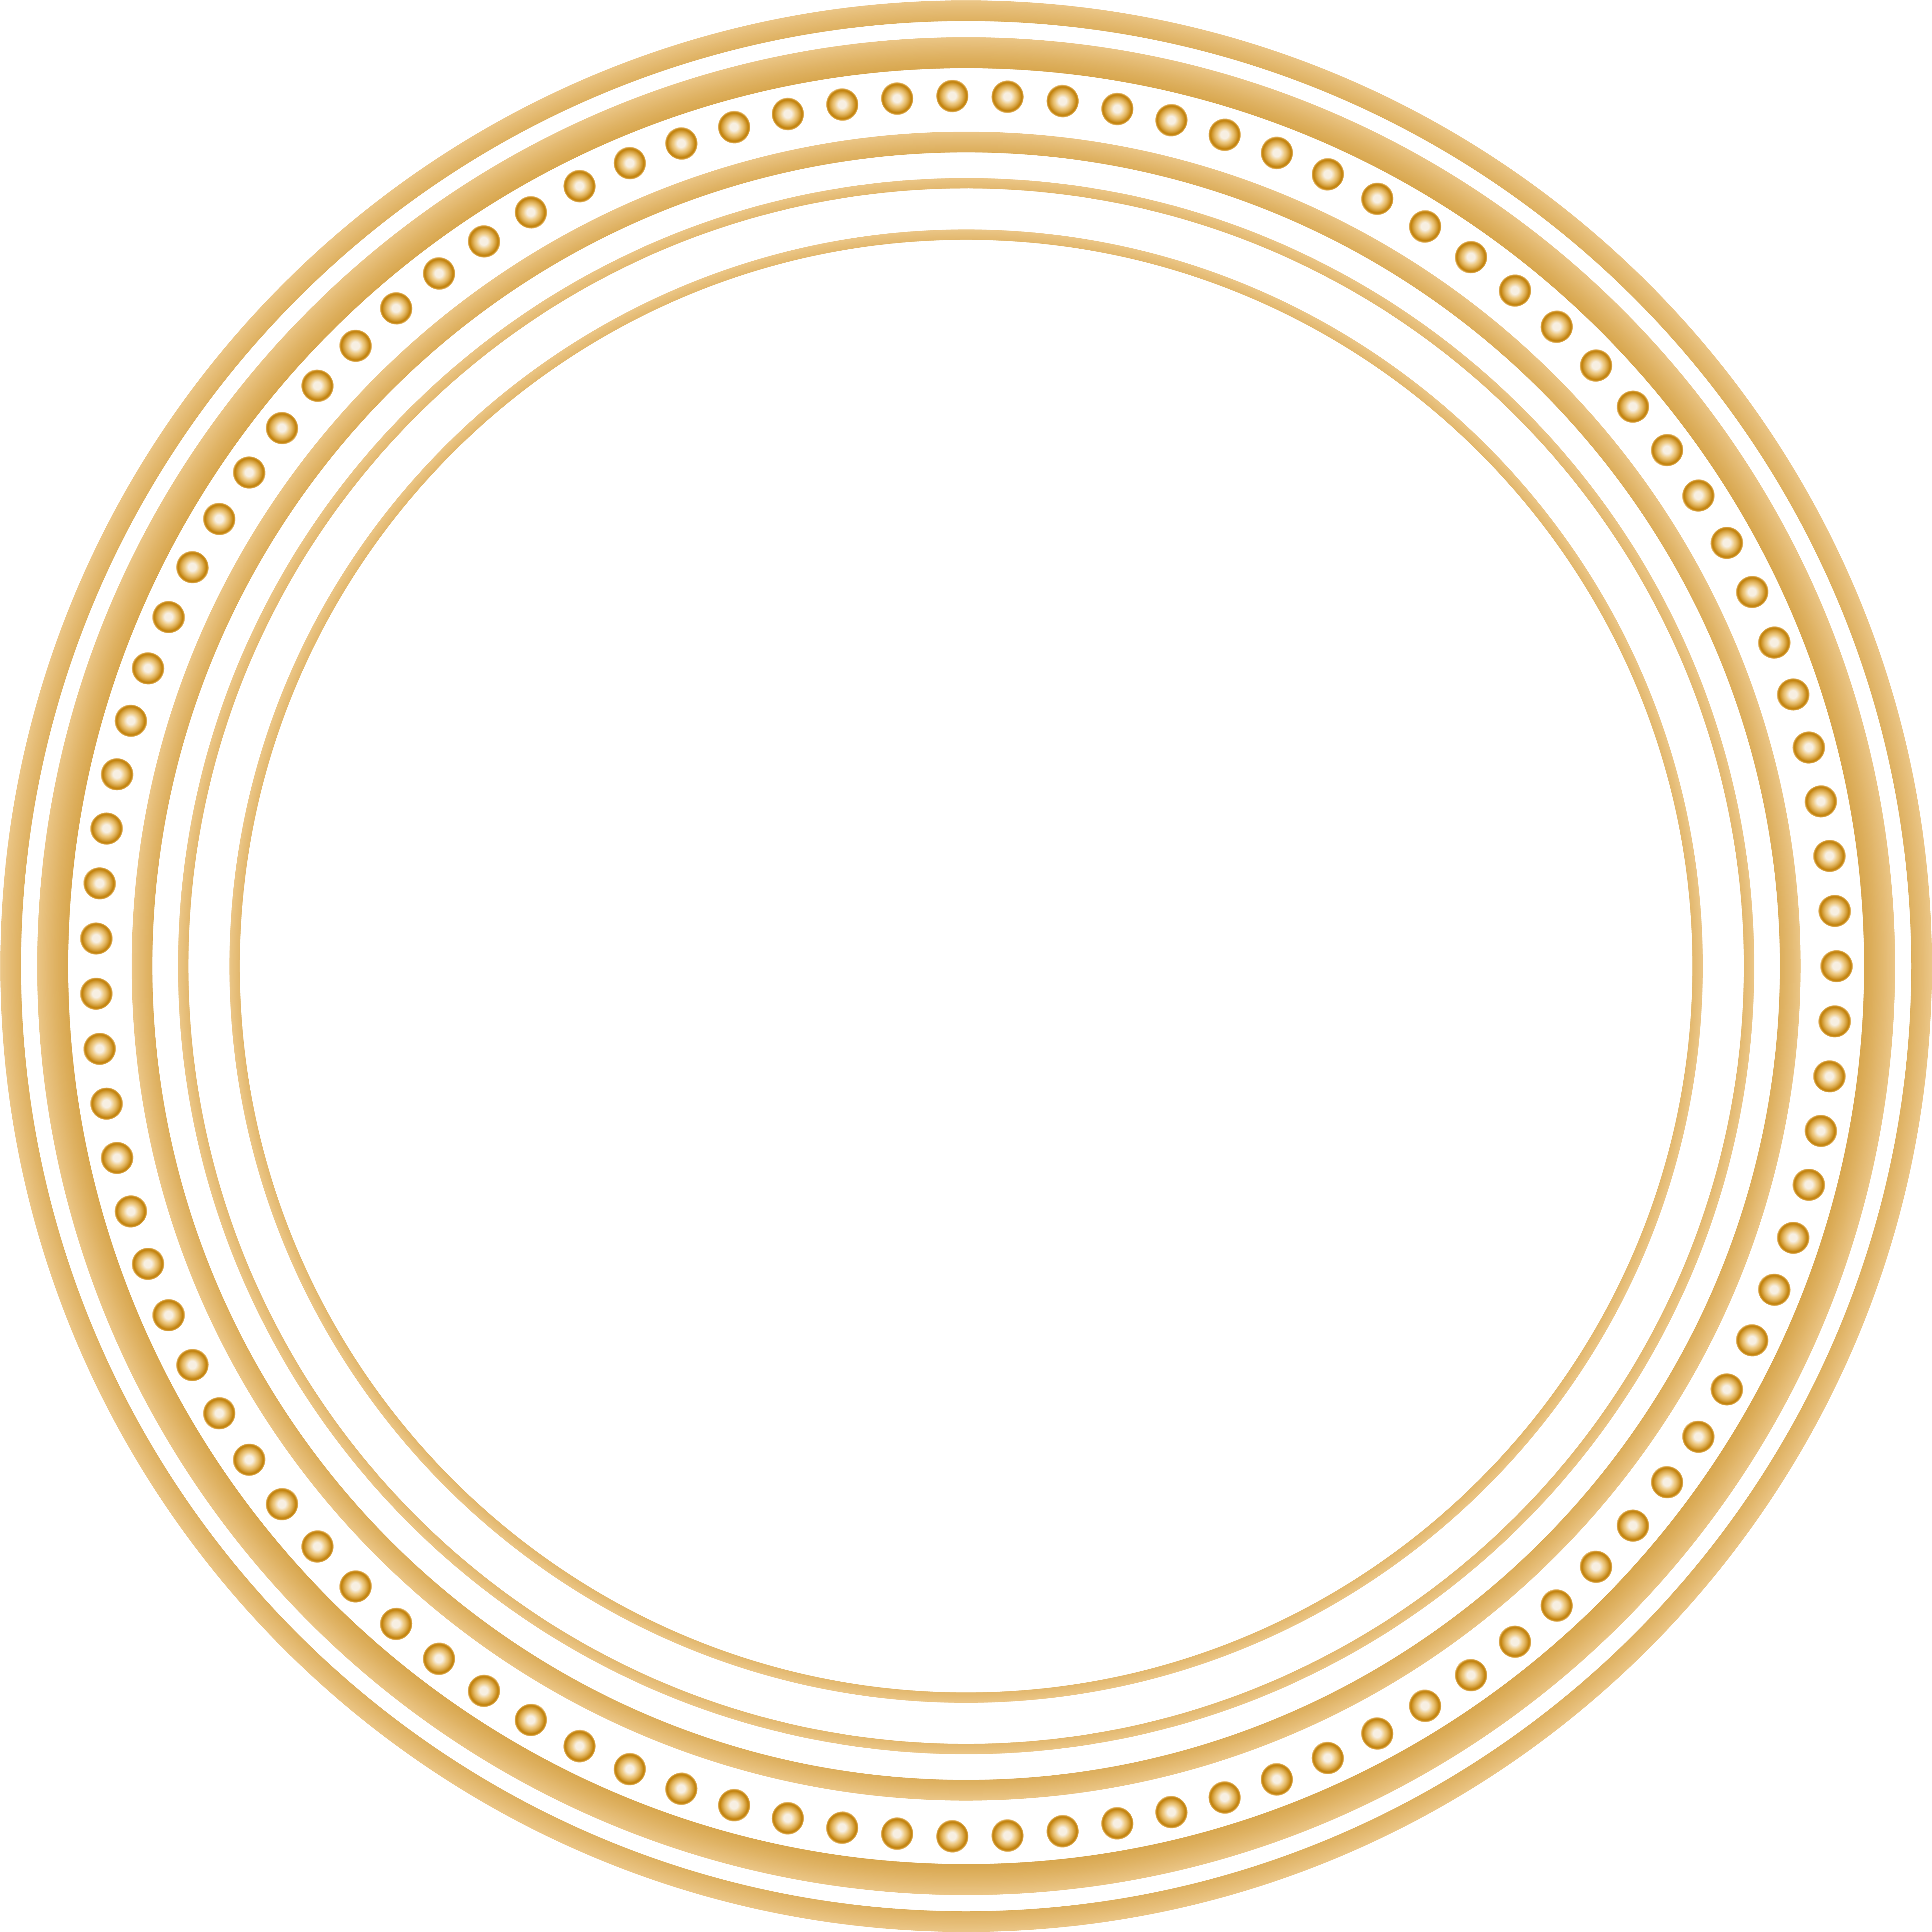 Immagine Trasparente del bordo del bordo del cornice del cerchio